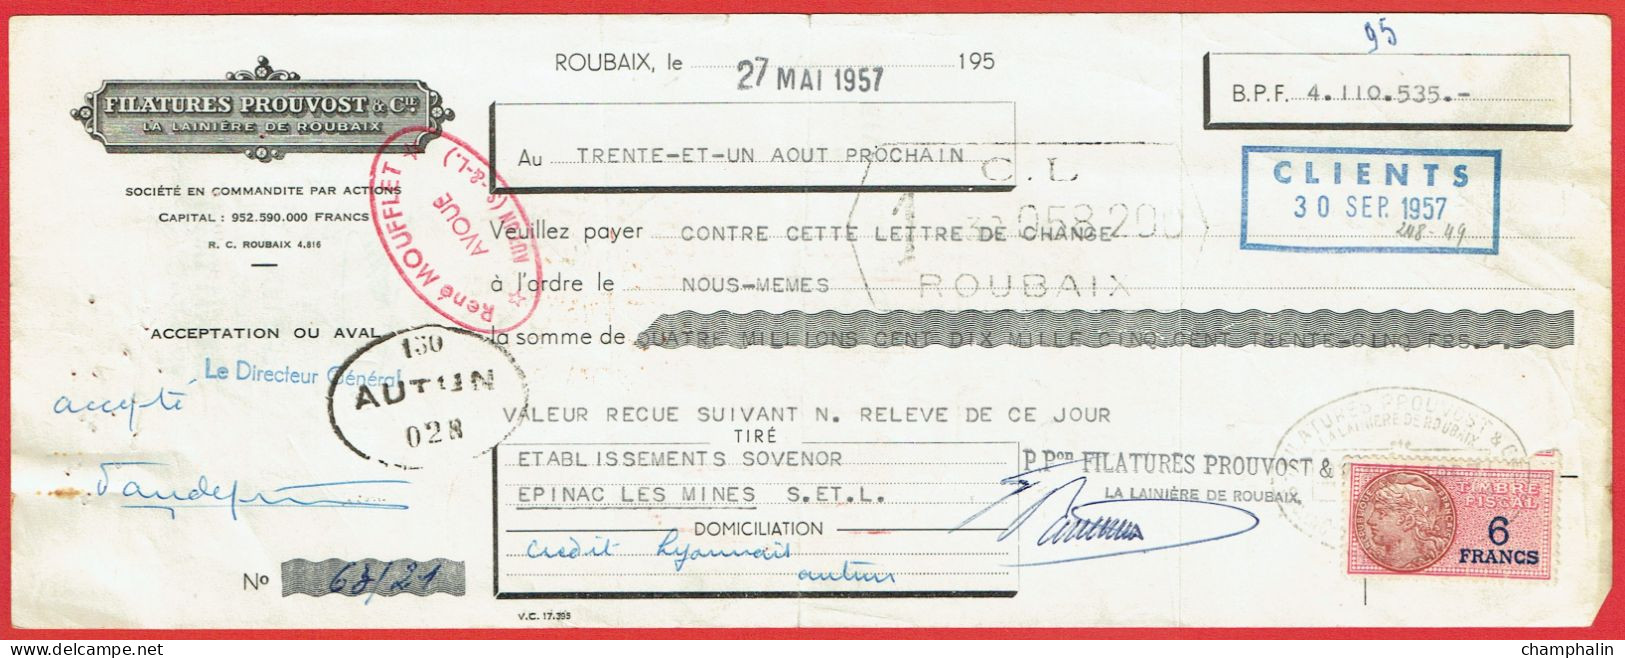 Lot 8 Lettres De Change De Roubaix (59) Pour Epinac-les-Mines (71) - 1957 - Timbre TF N°439-440 - Filatures Prouvost - Wechsel